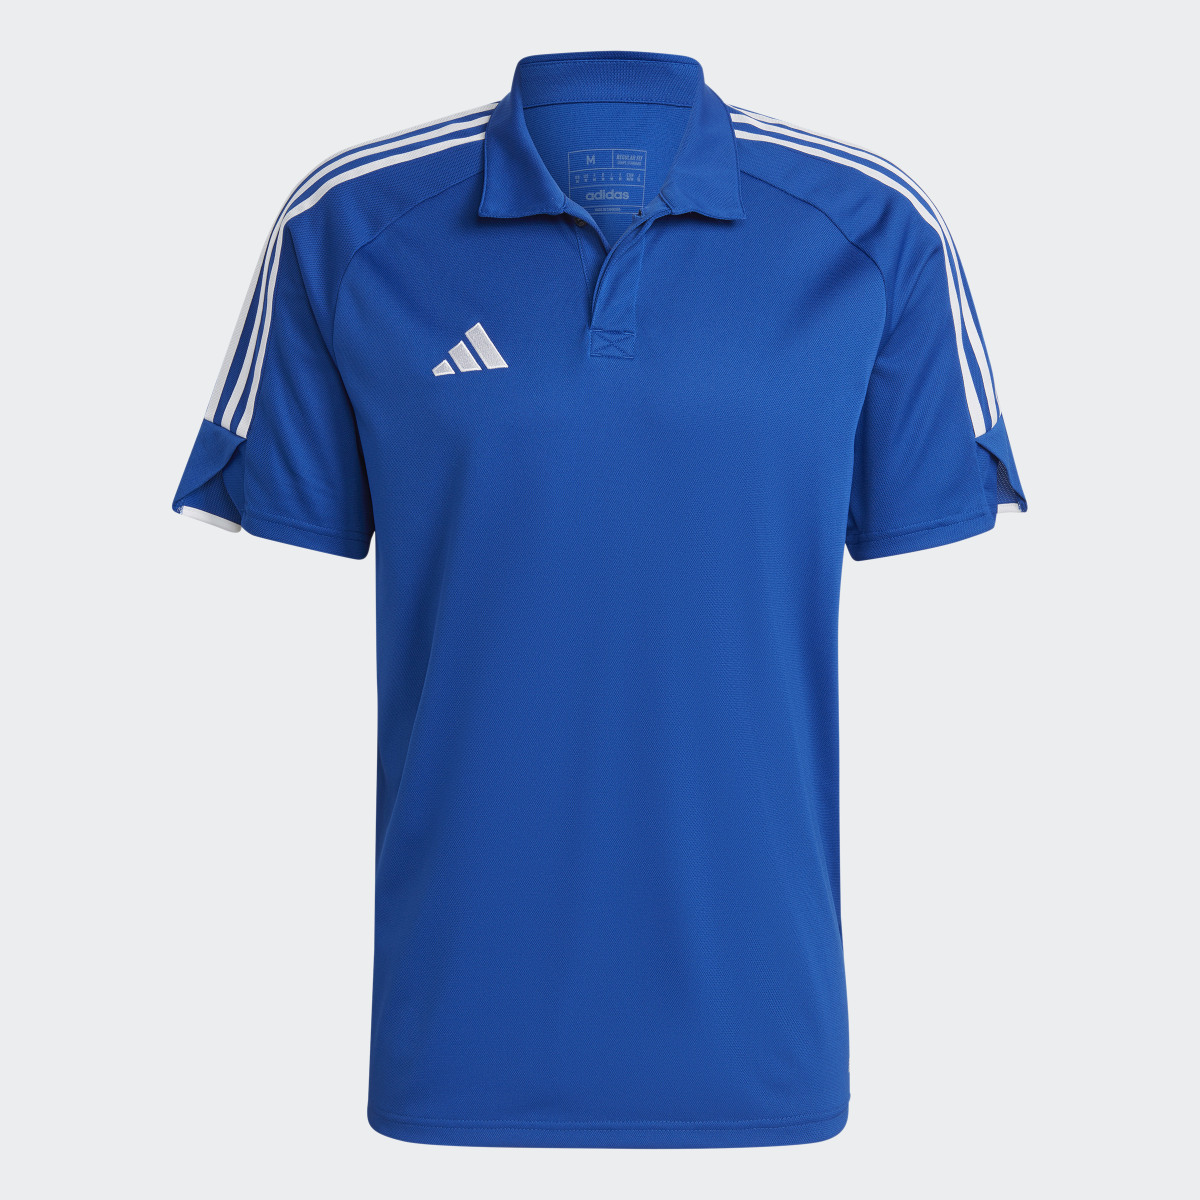 Adidas Tiro 23 League Polo Shirt. 5